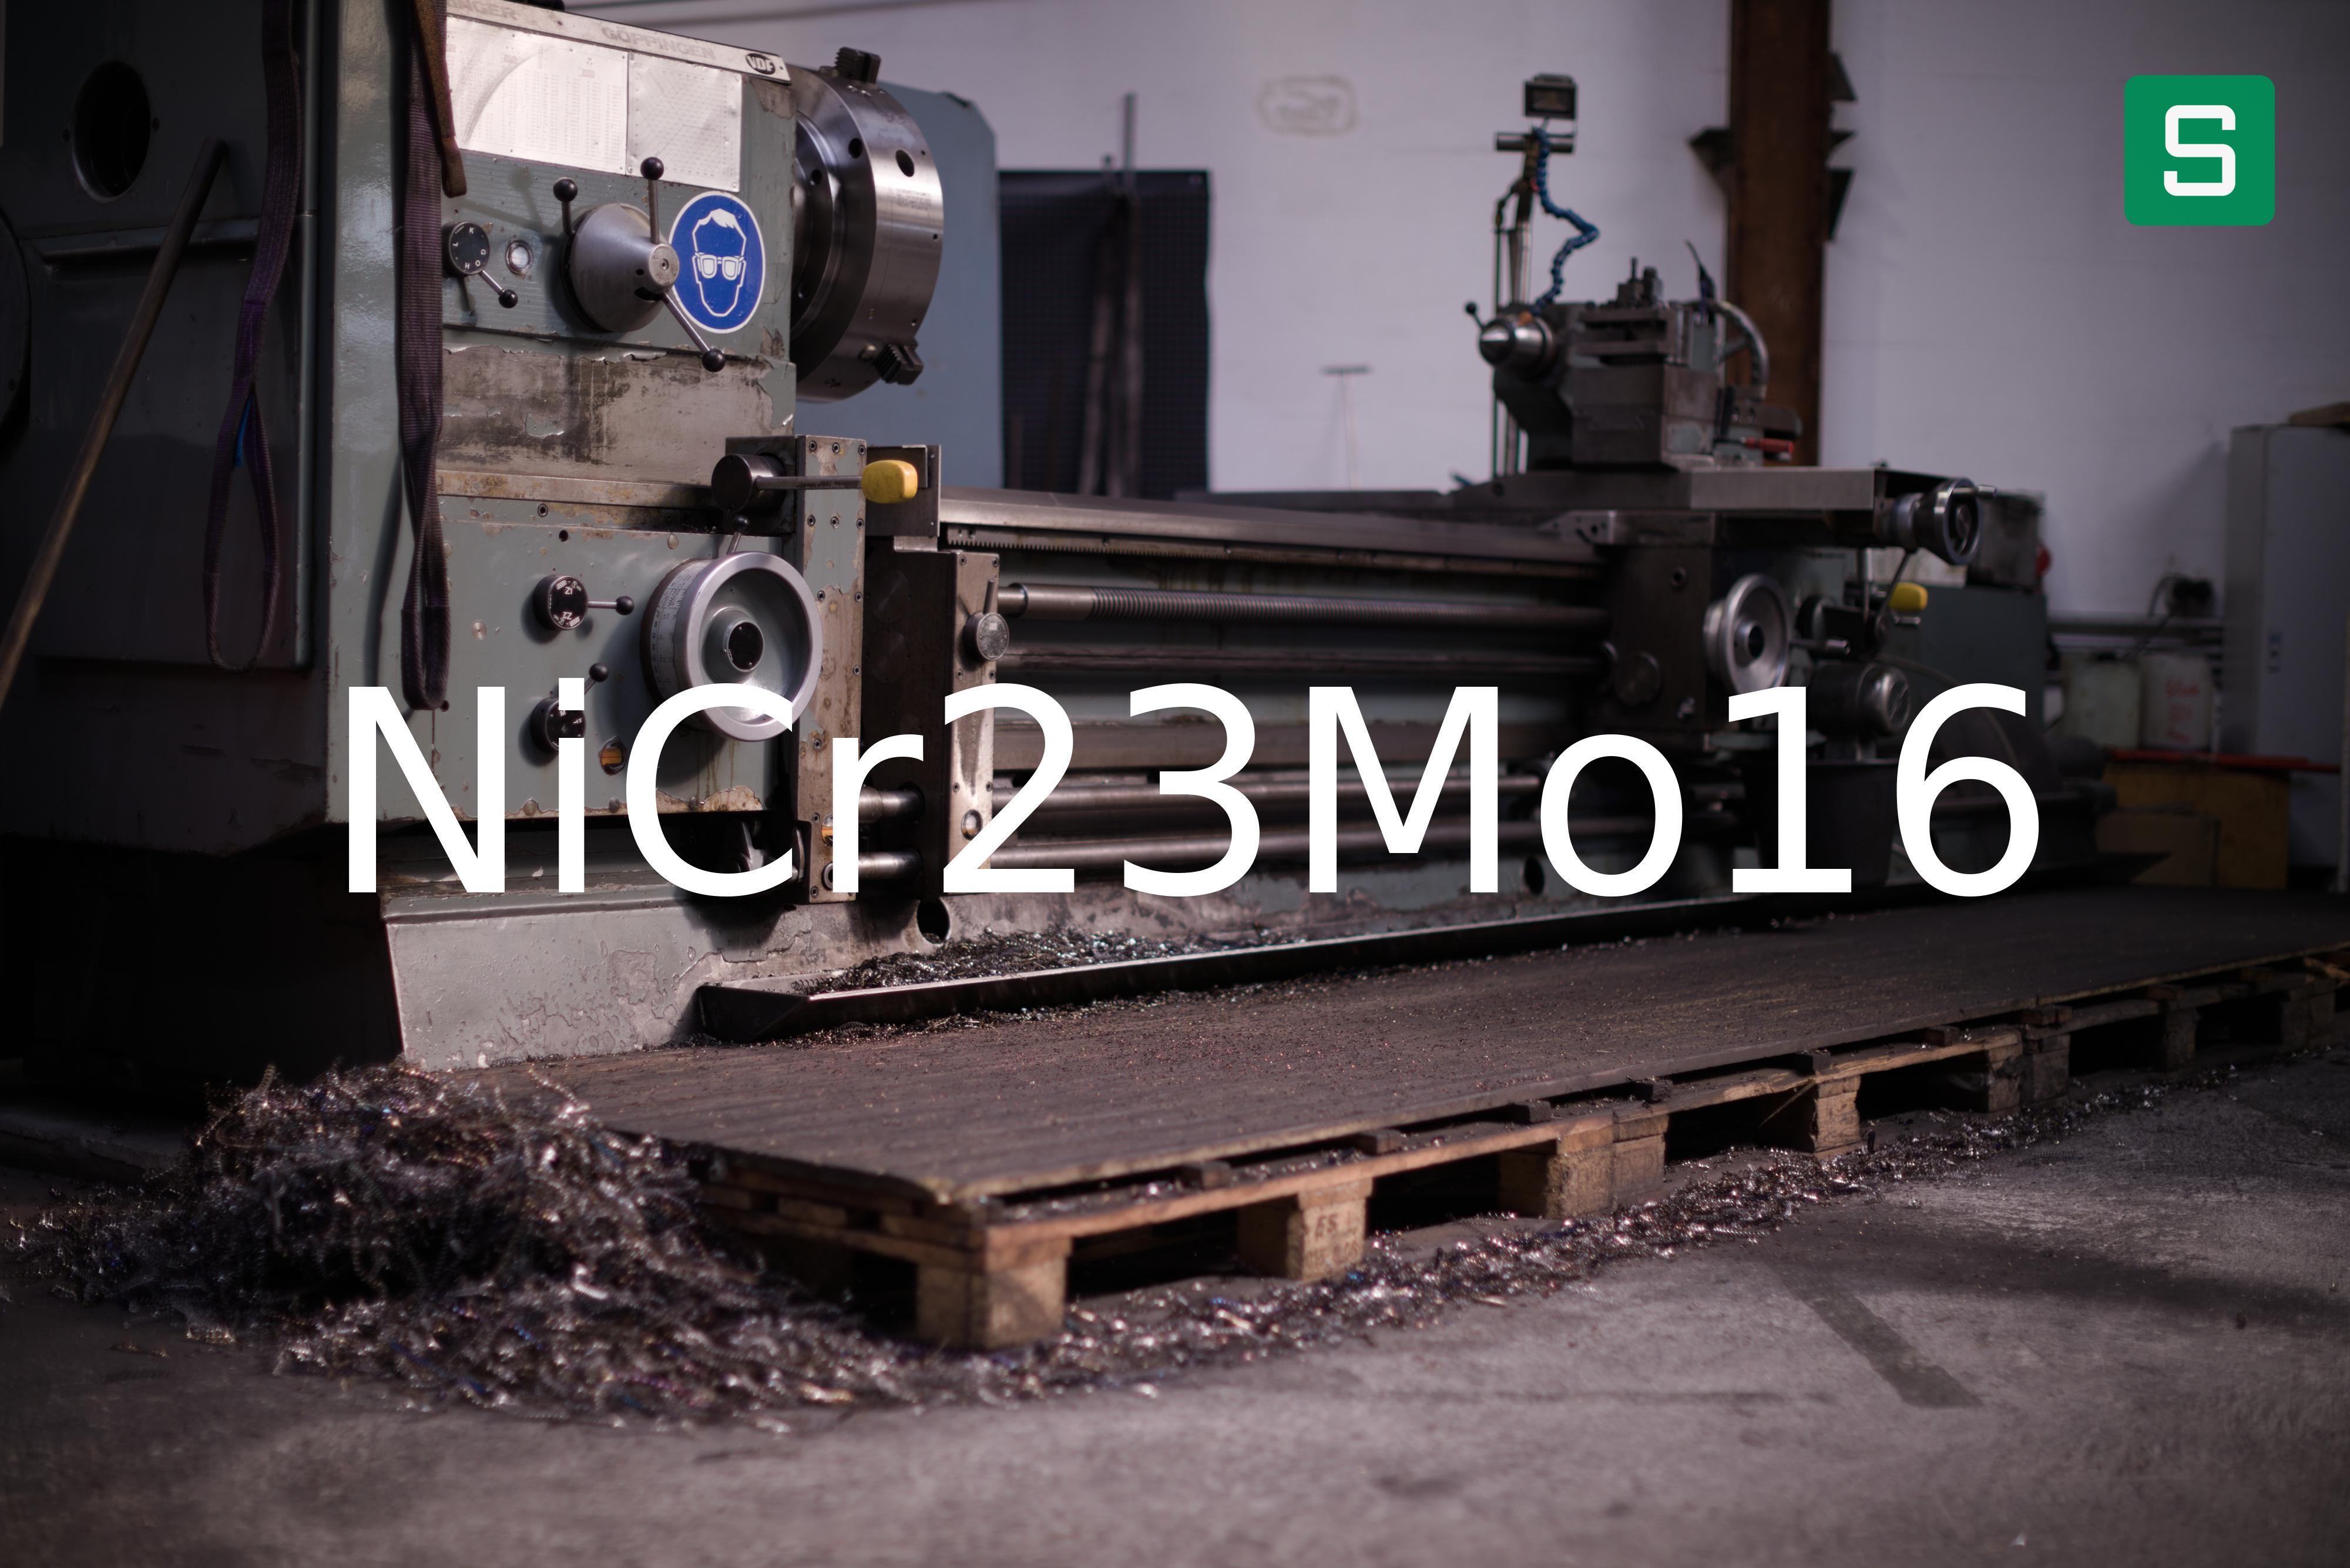 Steel Material: NiCr23Mo16